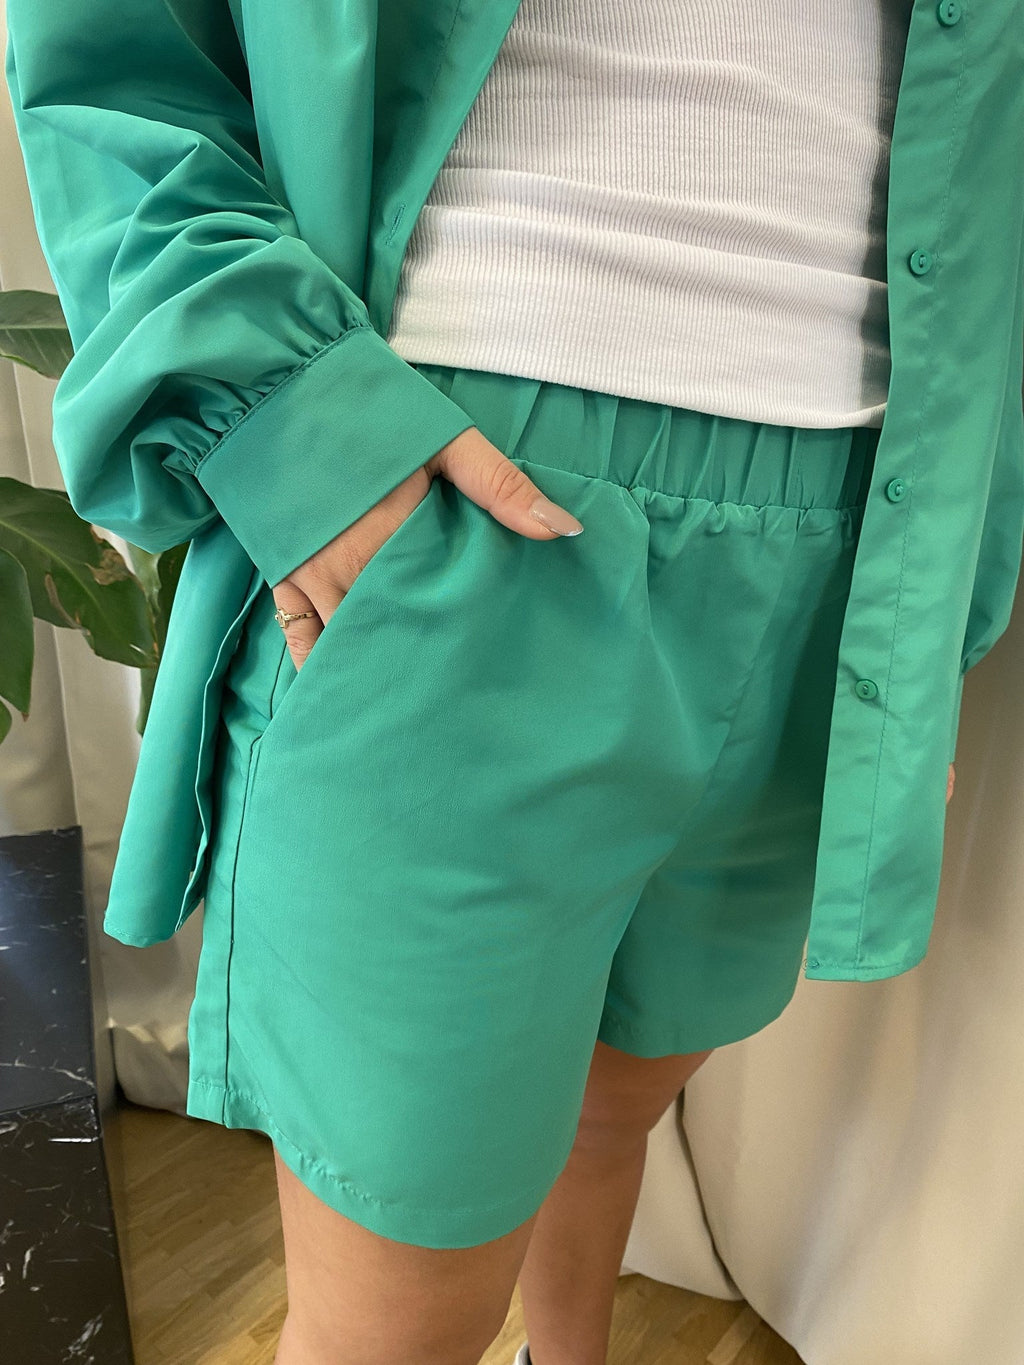 Chrilina aukštas juosmuo Shorts - Paprasta žalia